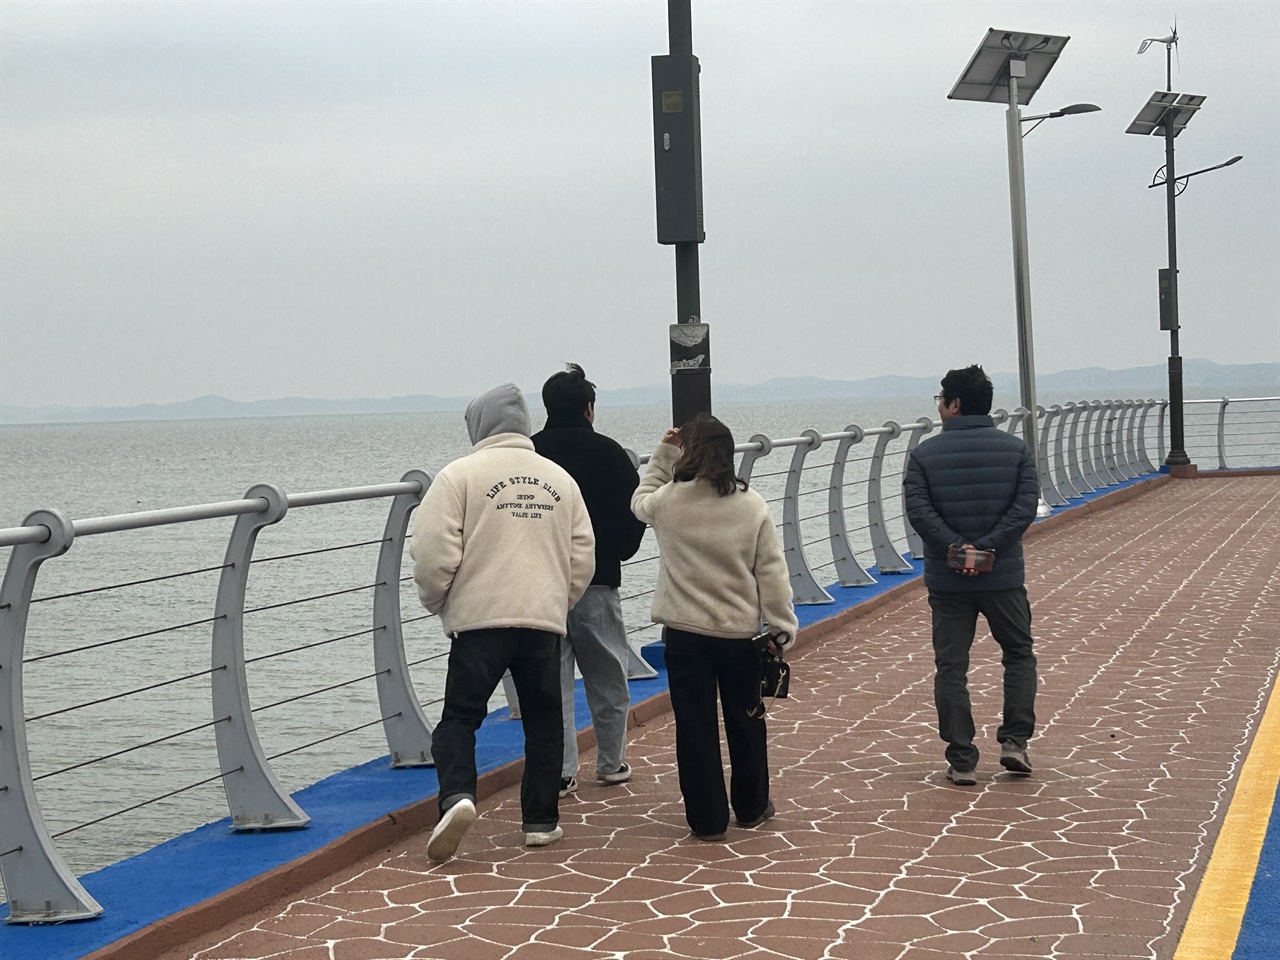  명품 낙조로 유명한 홍성 서부 궁리포구를 찾은 관광객들. 하지만, 구름이 많고 날이 흐리면서 계묘년 해넘이를 볼 수 없었다. 